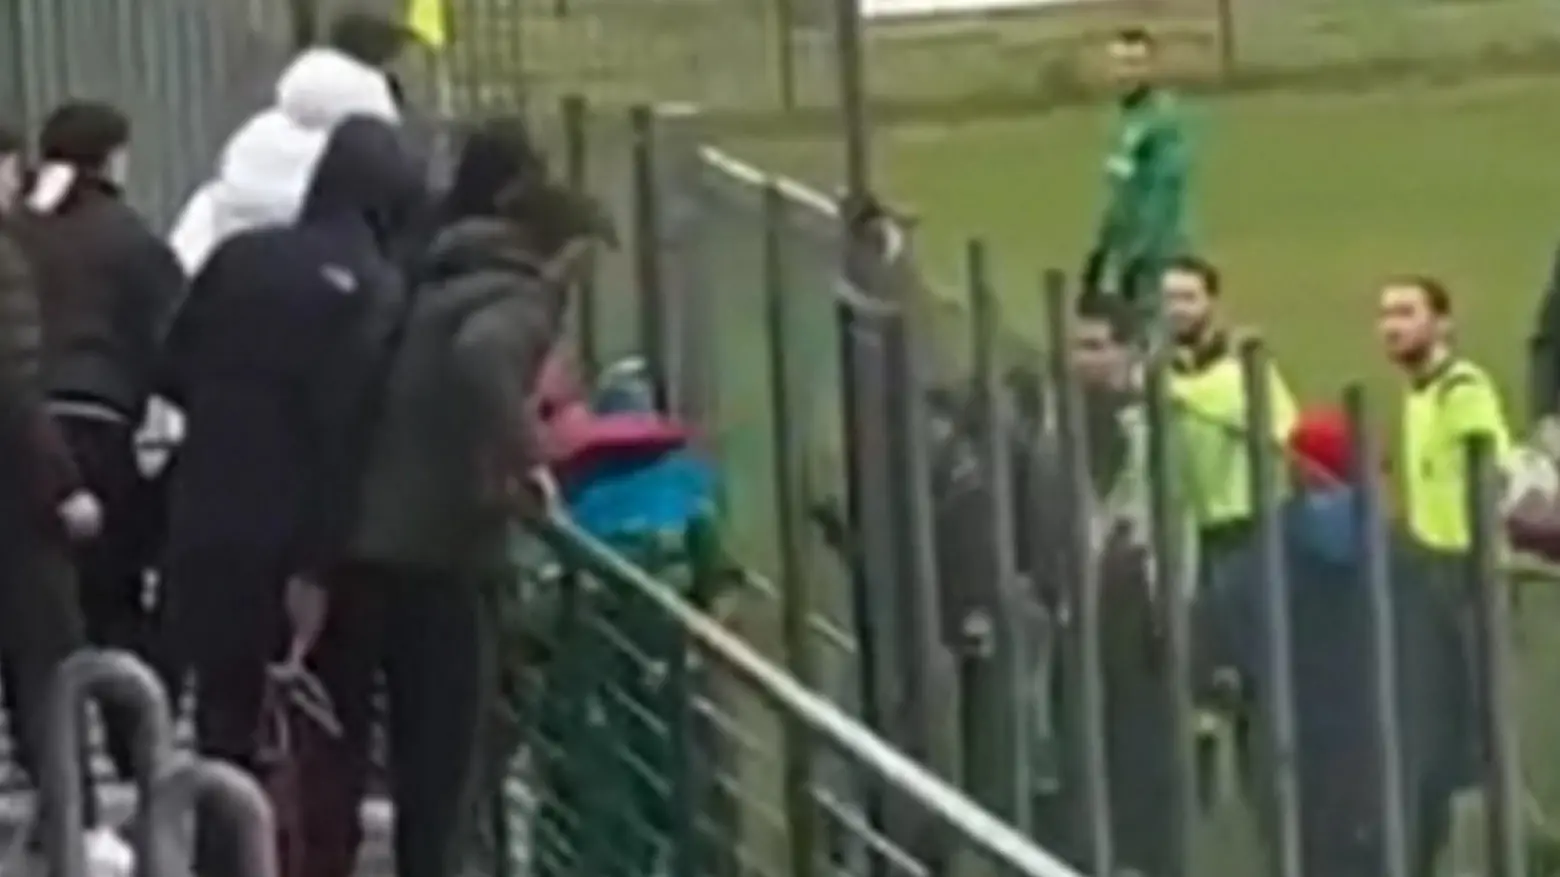 Giocatore colpito a ’ombrellate’ dai tifosi:  multa di 150 euro al Verucchio calcio